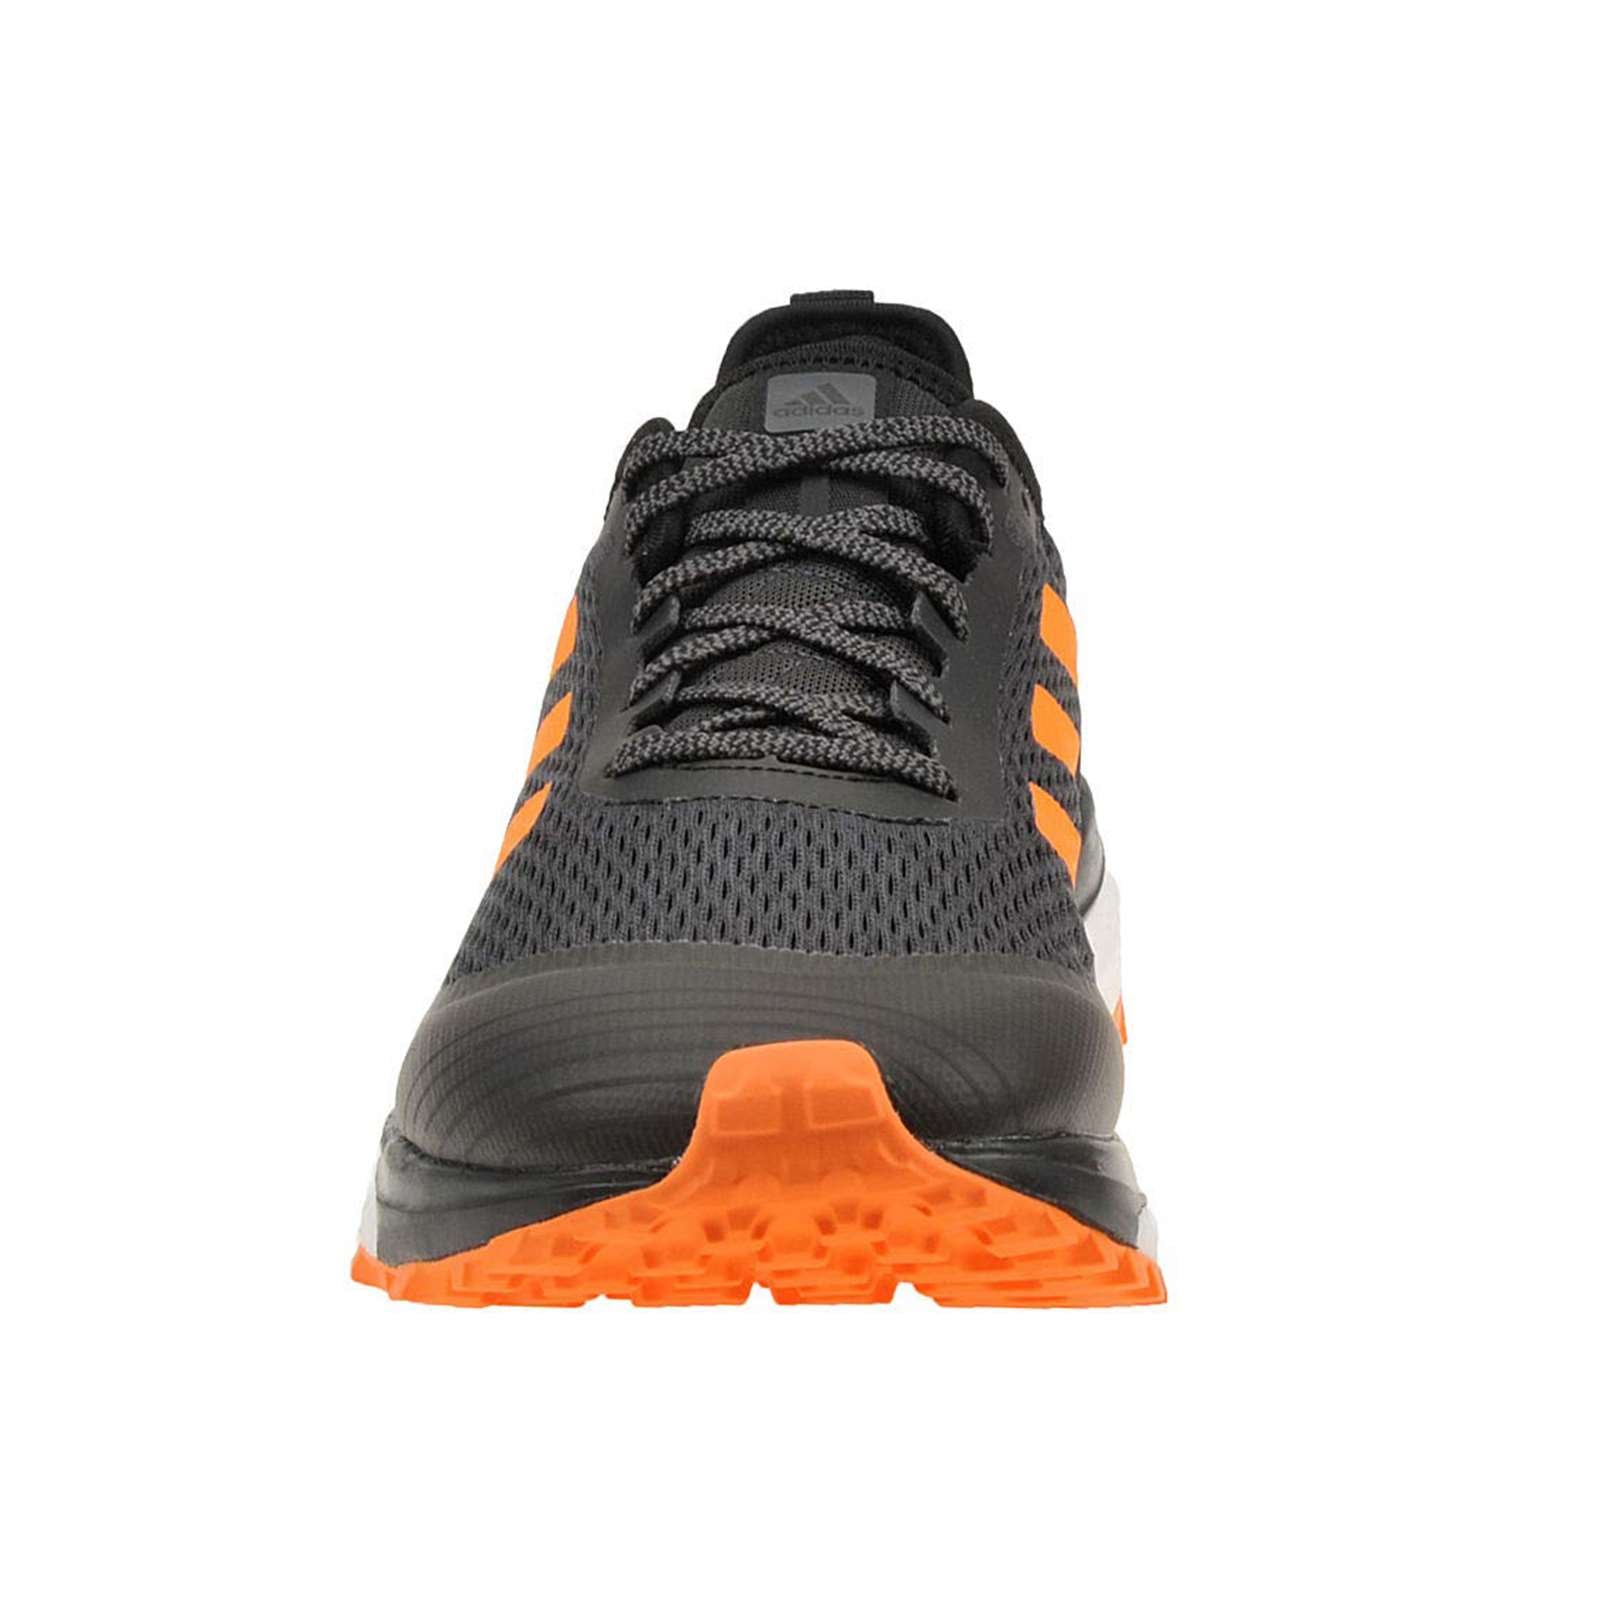 Adidas Men Response Trail Running Shoes